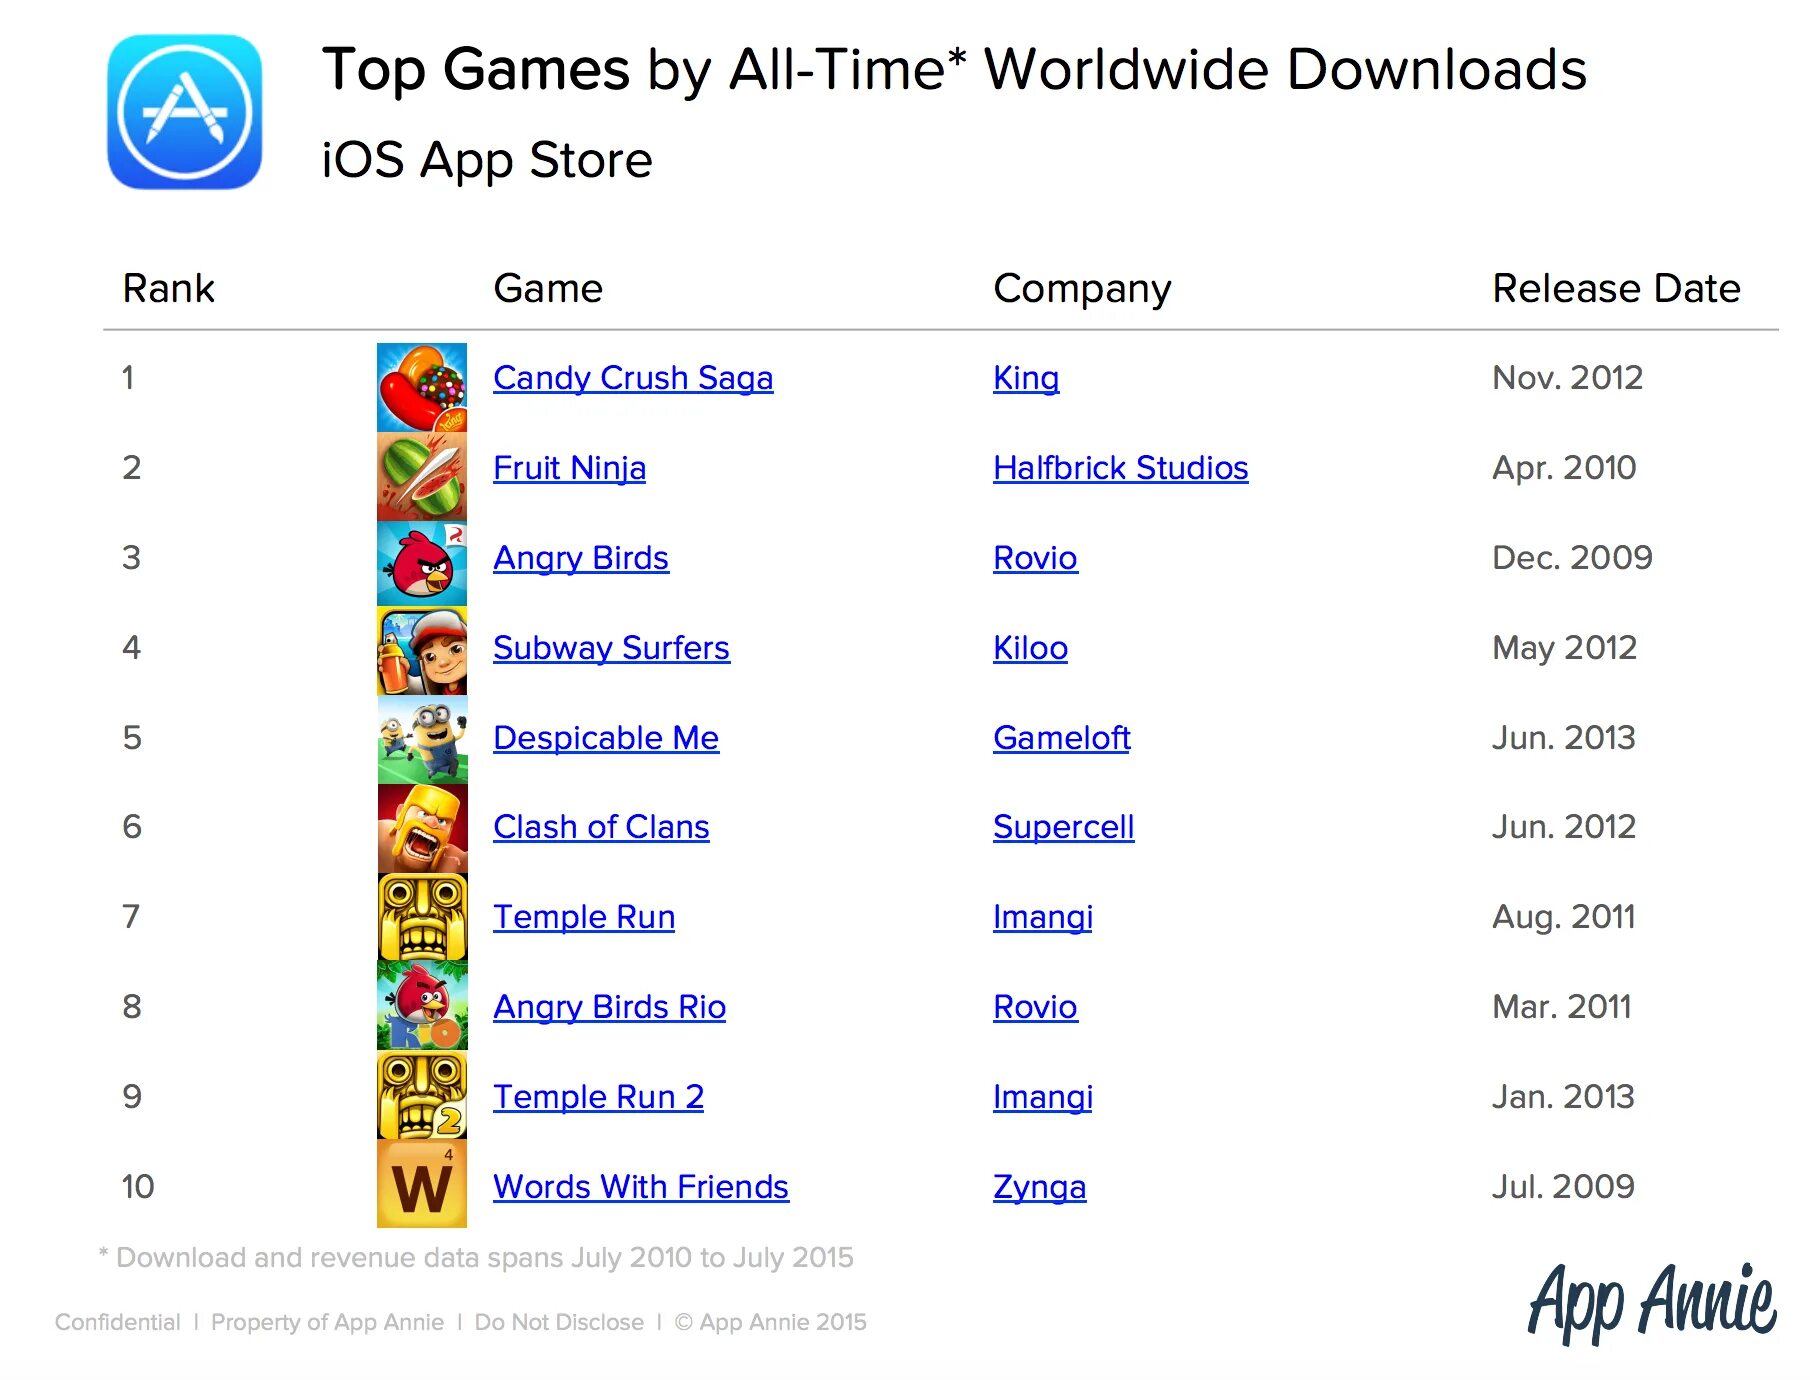 Места игры рейтинг. Список самых популярных игр. Популярные игры список. Список самых популярных мобильных игр. Какая игра на 1 месте.